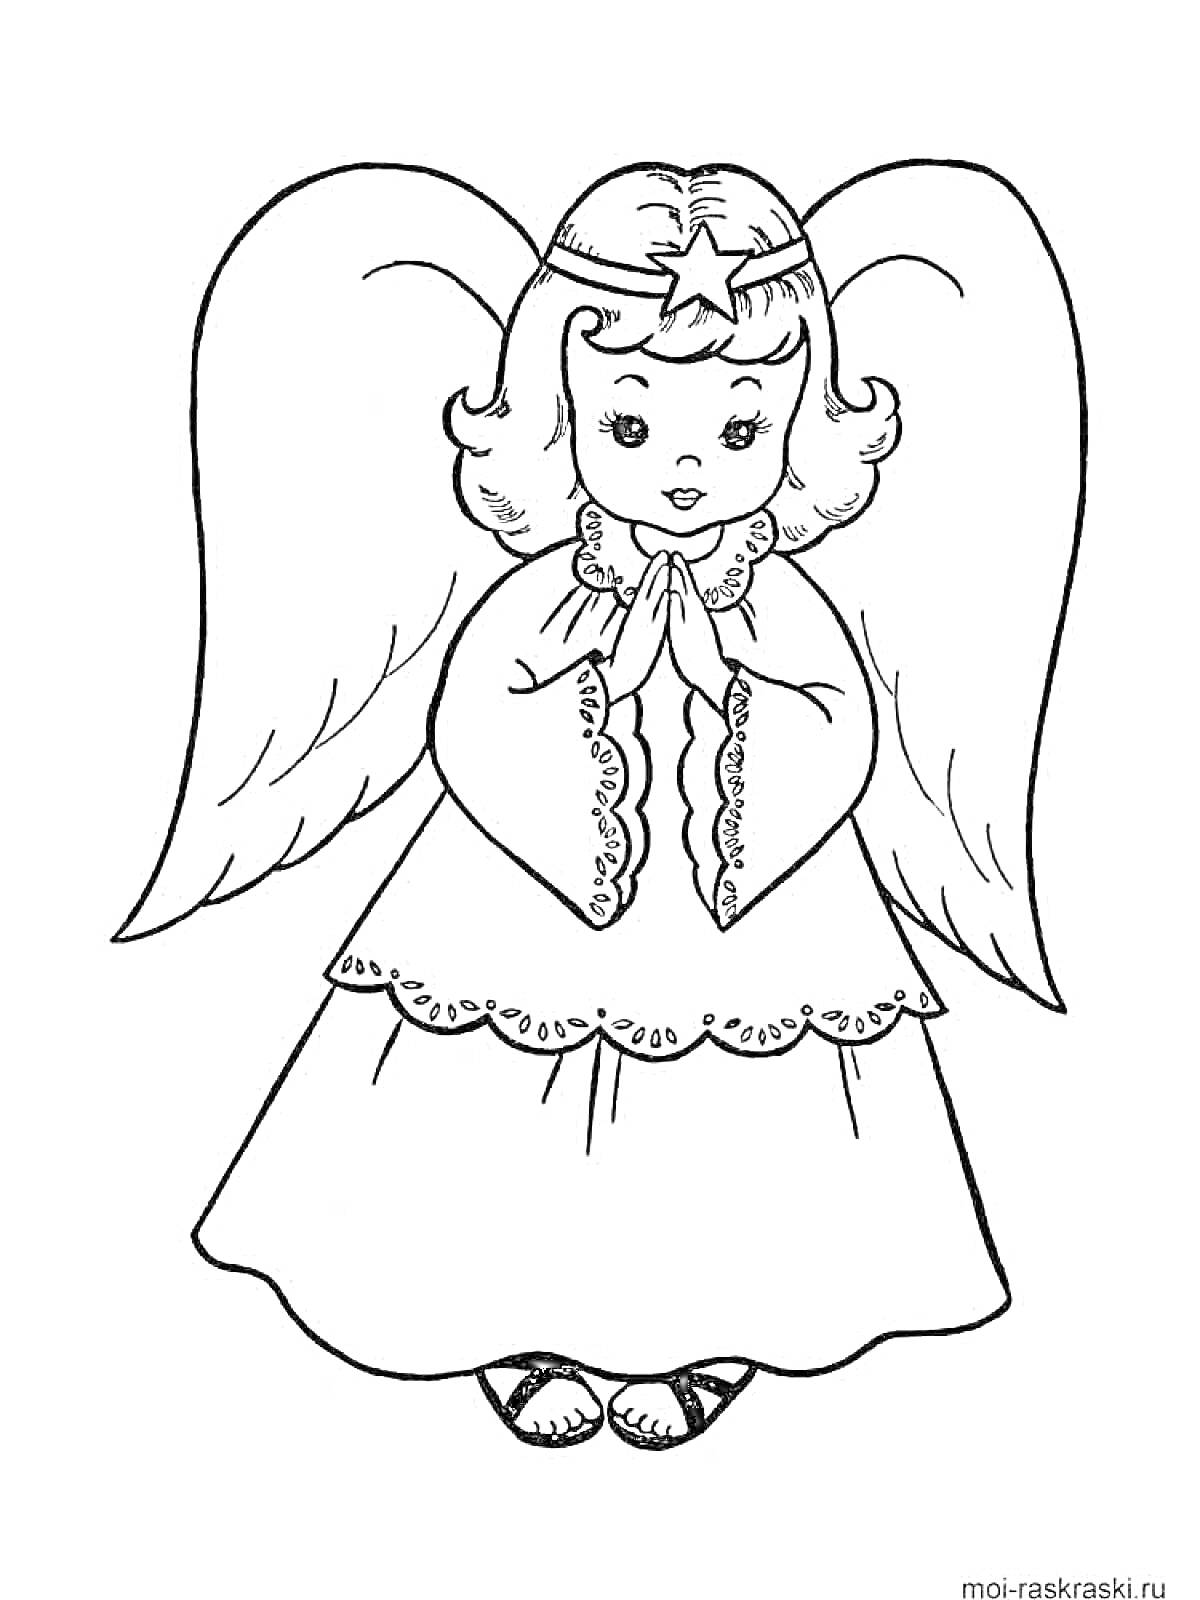 Ангел с крыльями, с звёздочкой на голове и сложенными руками в молитве